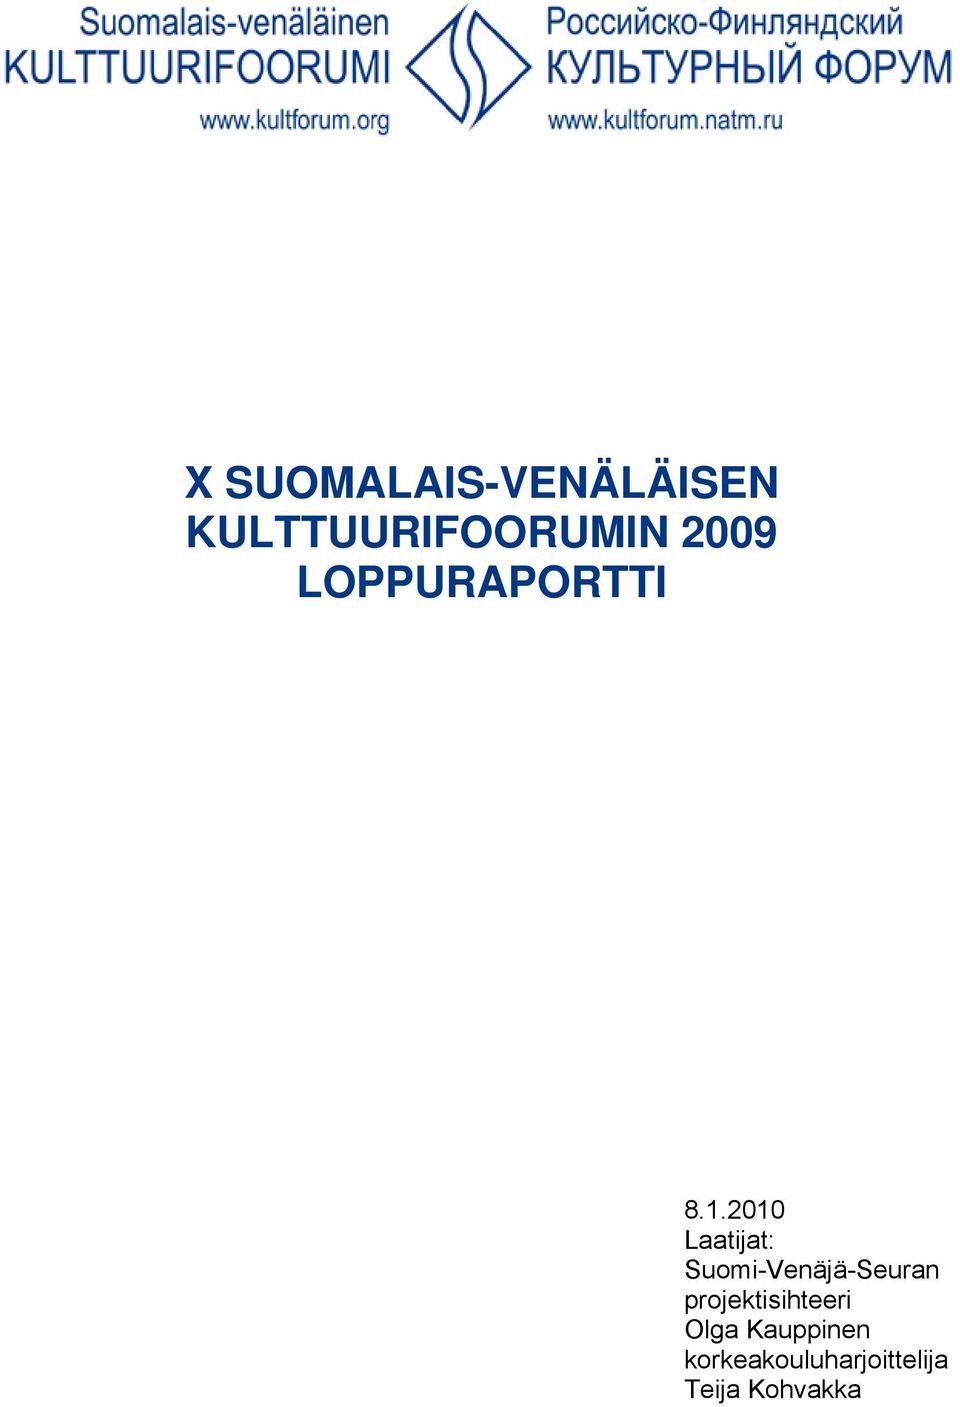 2010 Laatijat: Suomi-Venäjä-Seuran